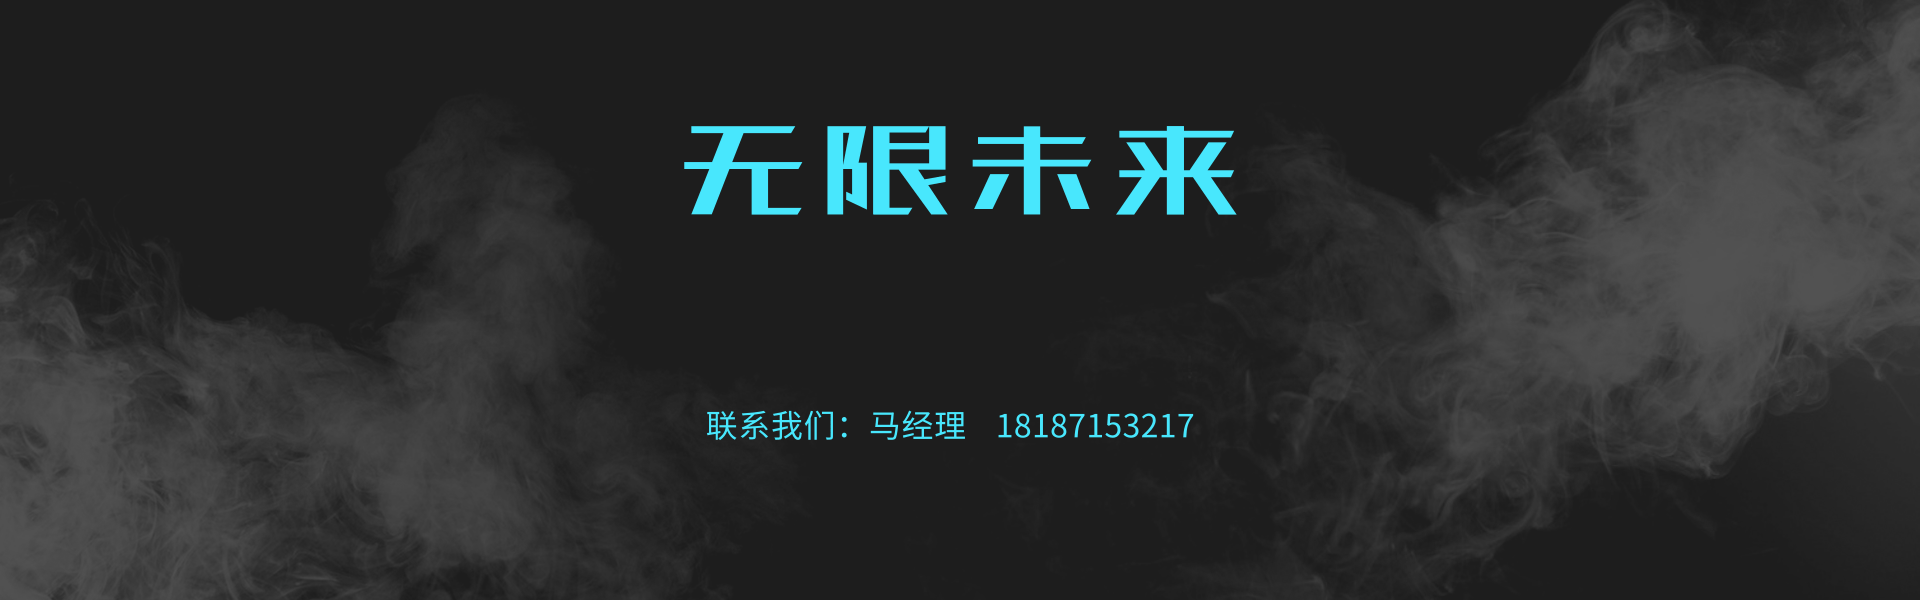 高端大气数码笔记本促销banner@凡科快图